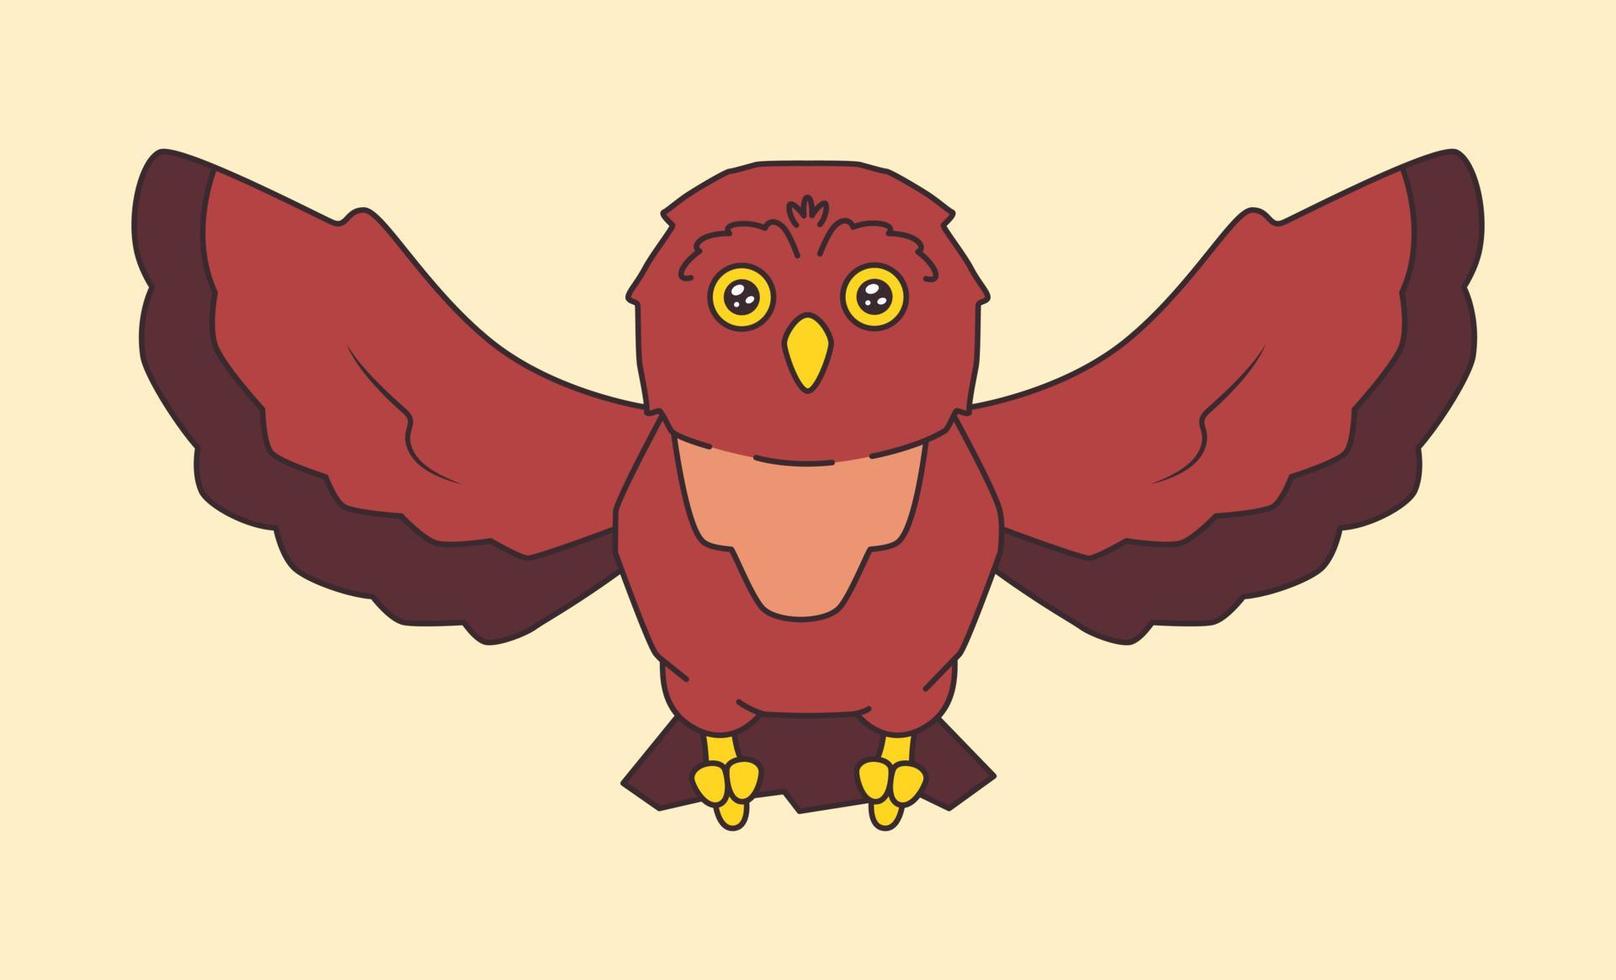 Cartoon cute flying owl bird vector illustration